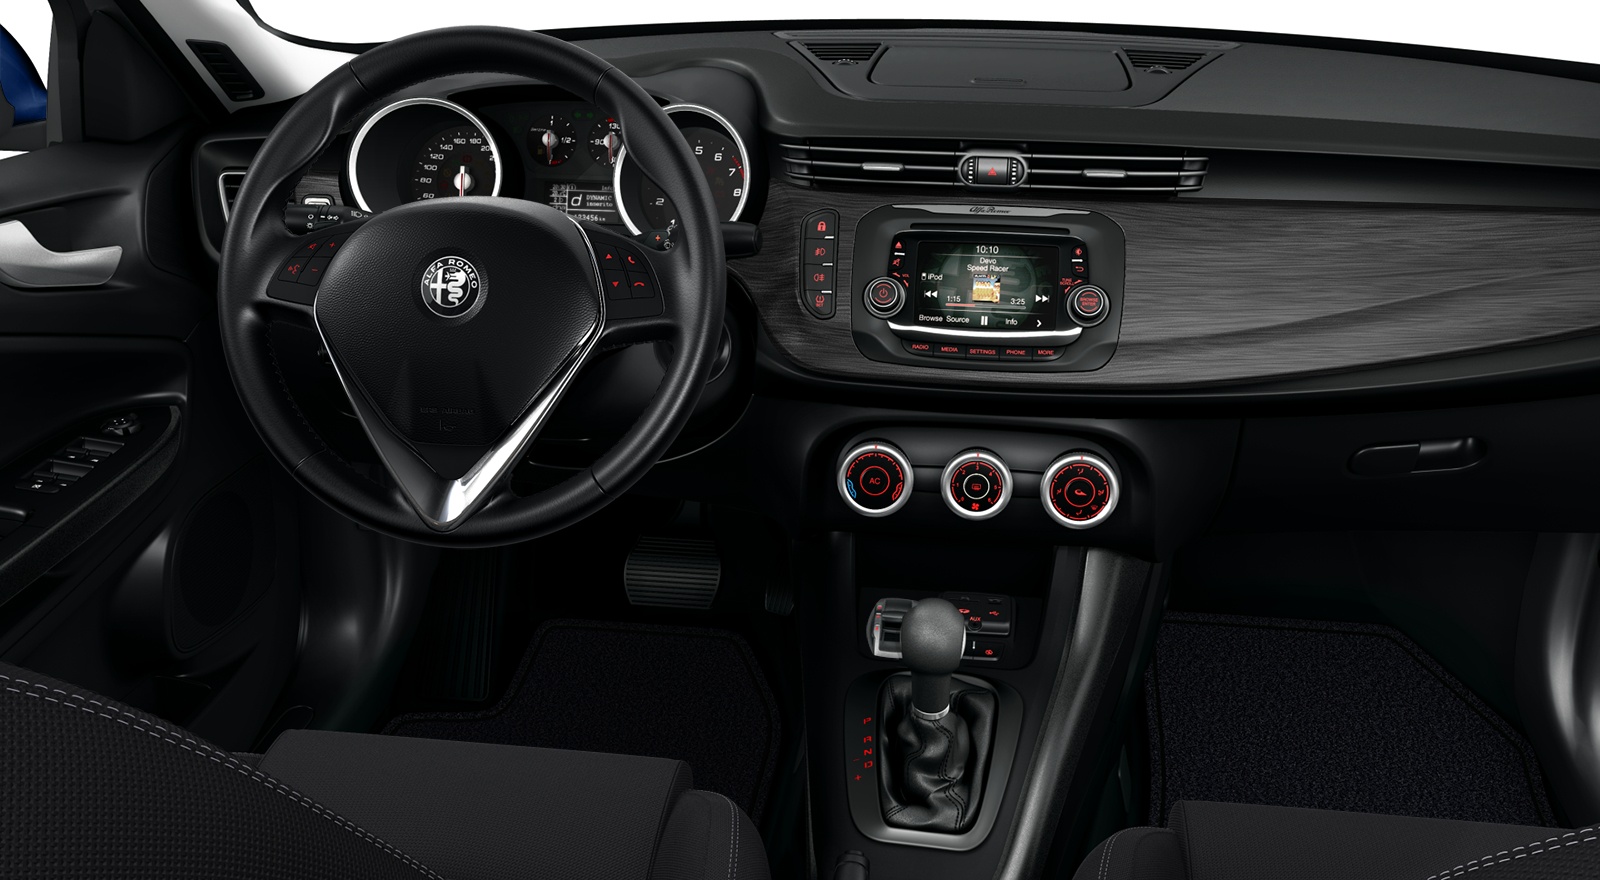 Alfa Romeo GiuliEtta interior front view